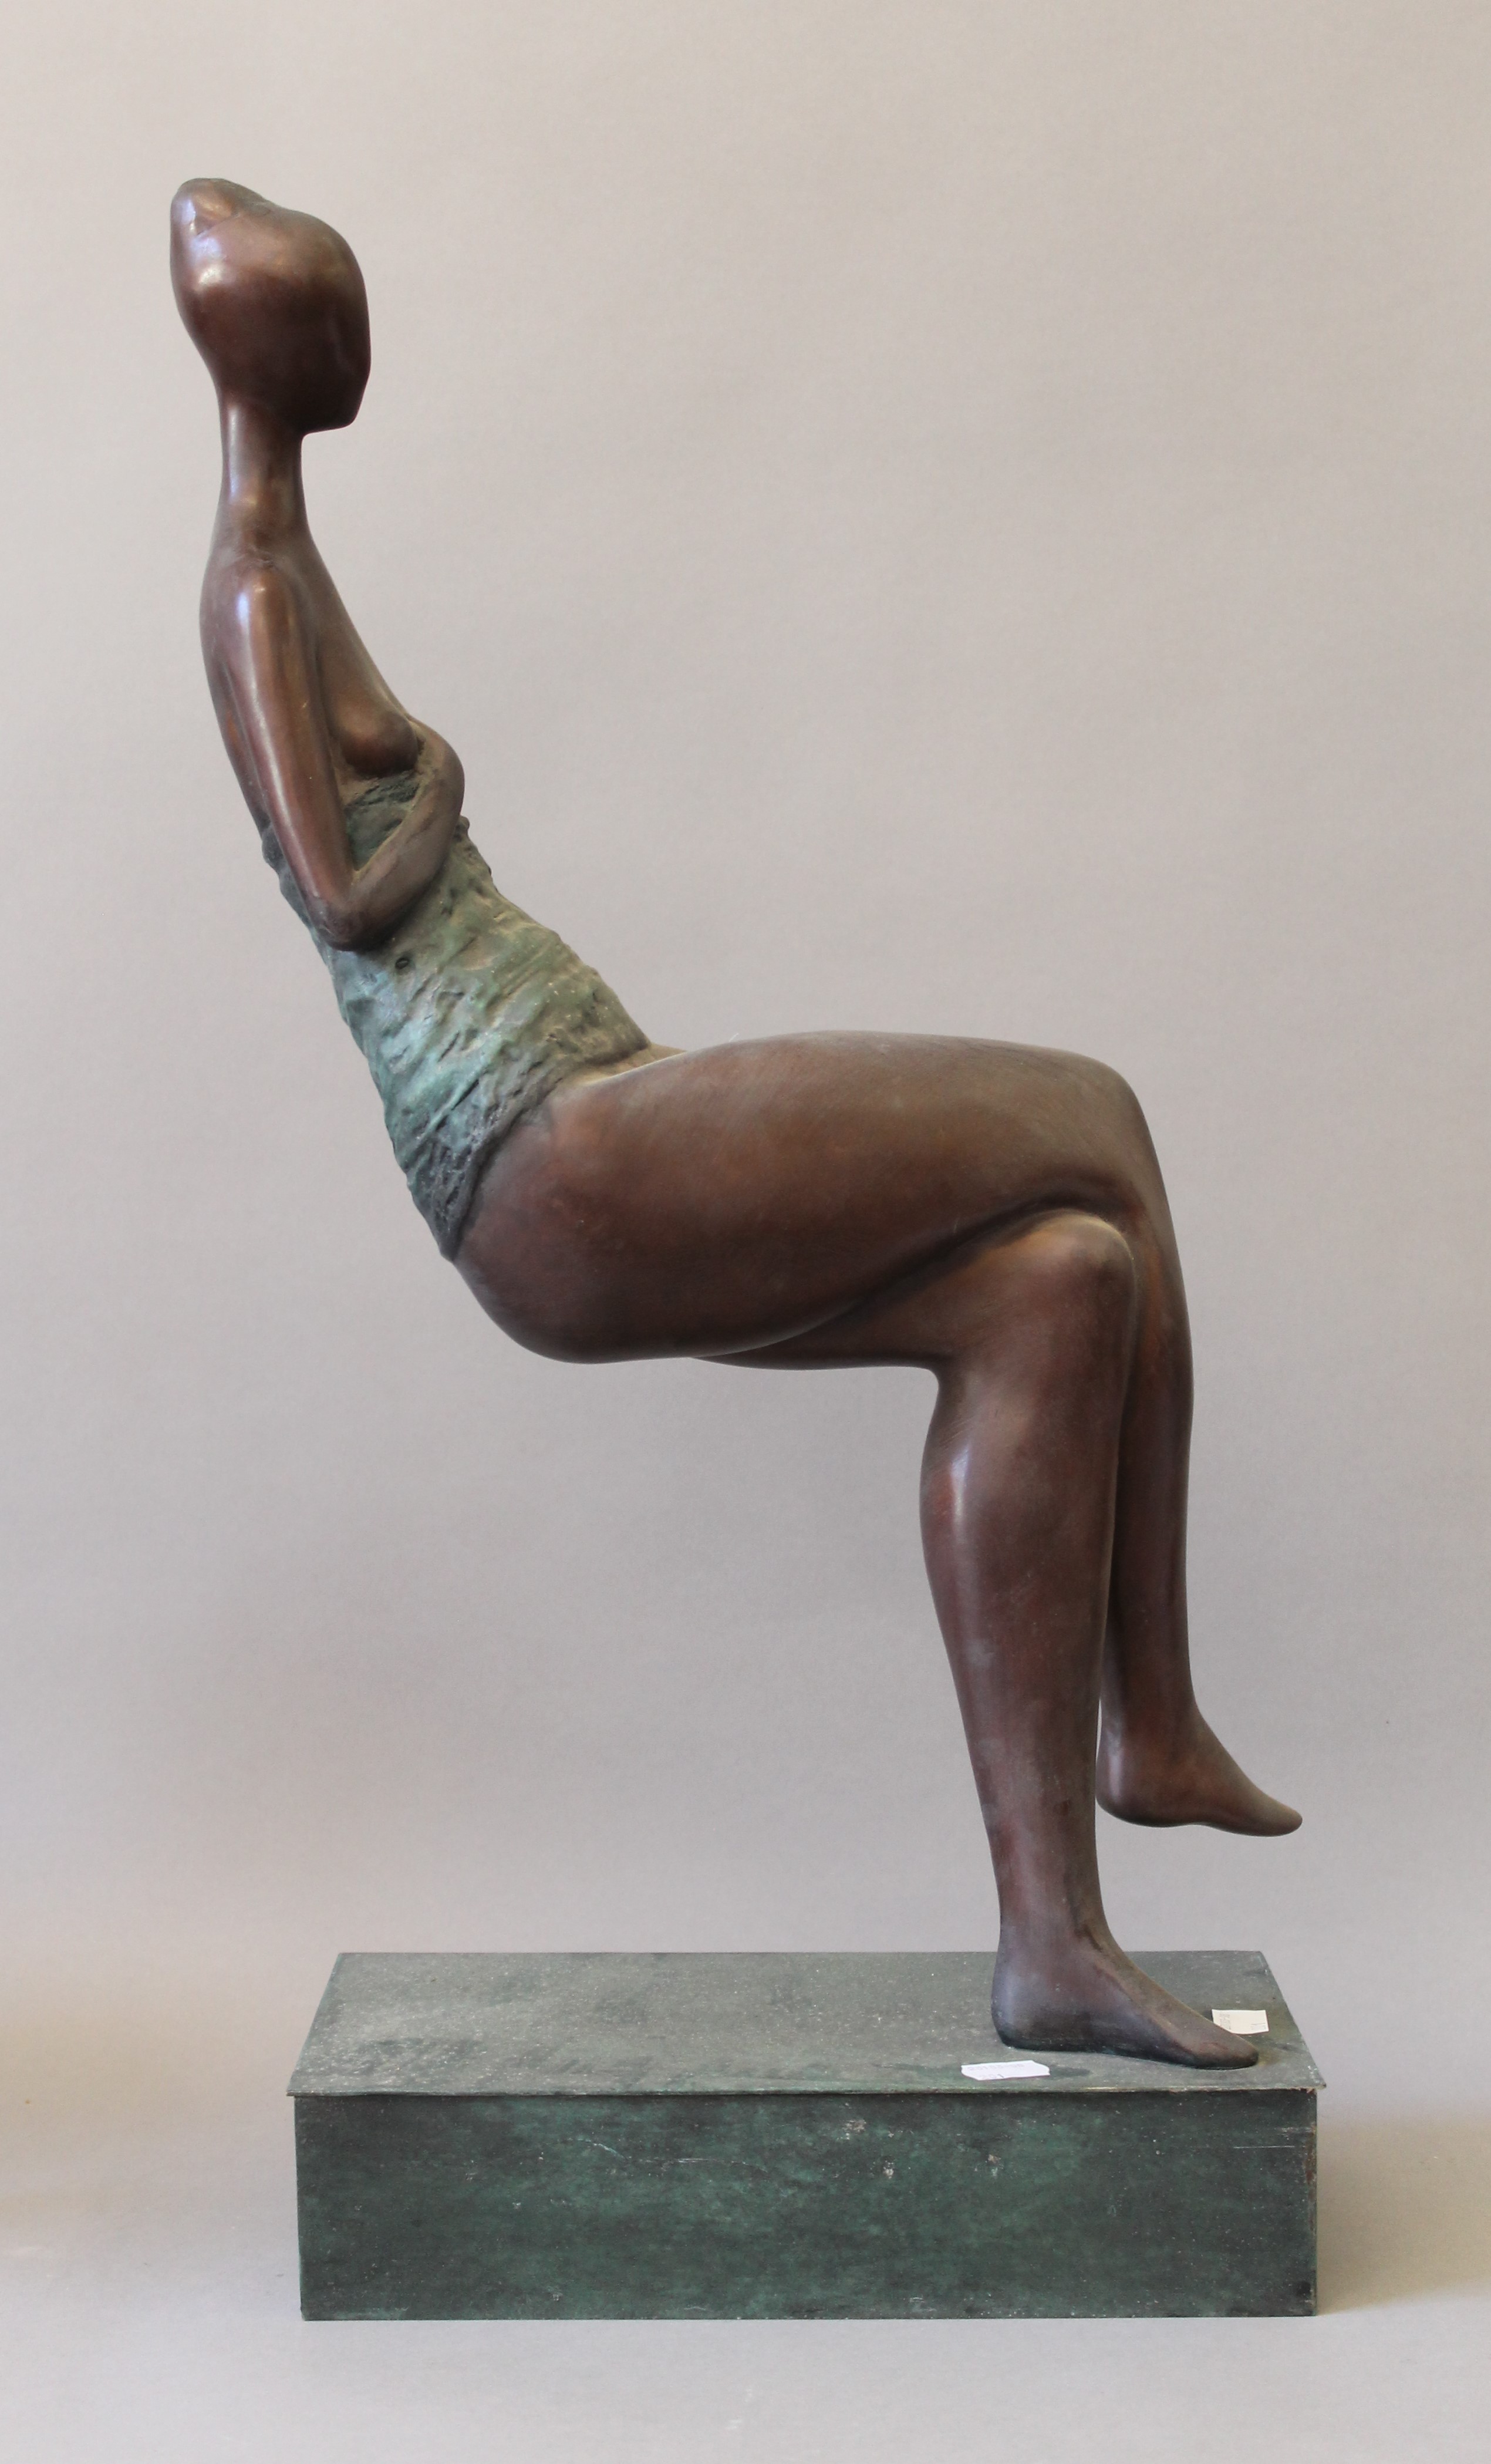 An abstract bronze sculpture of a sitting woman. 62 cm high.